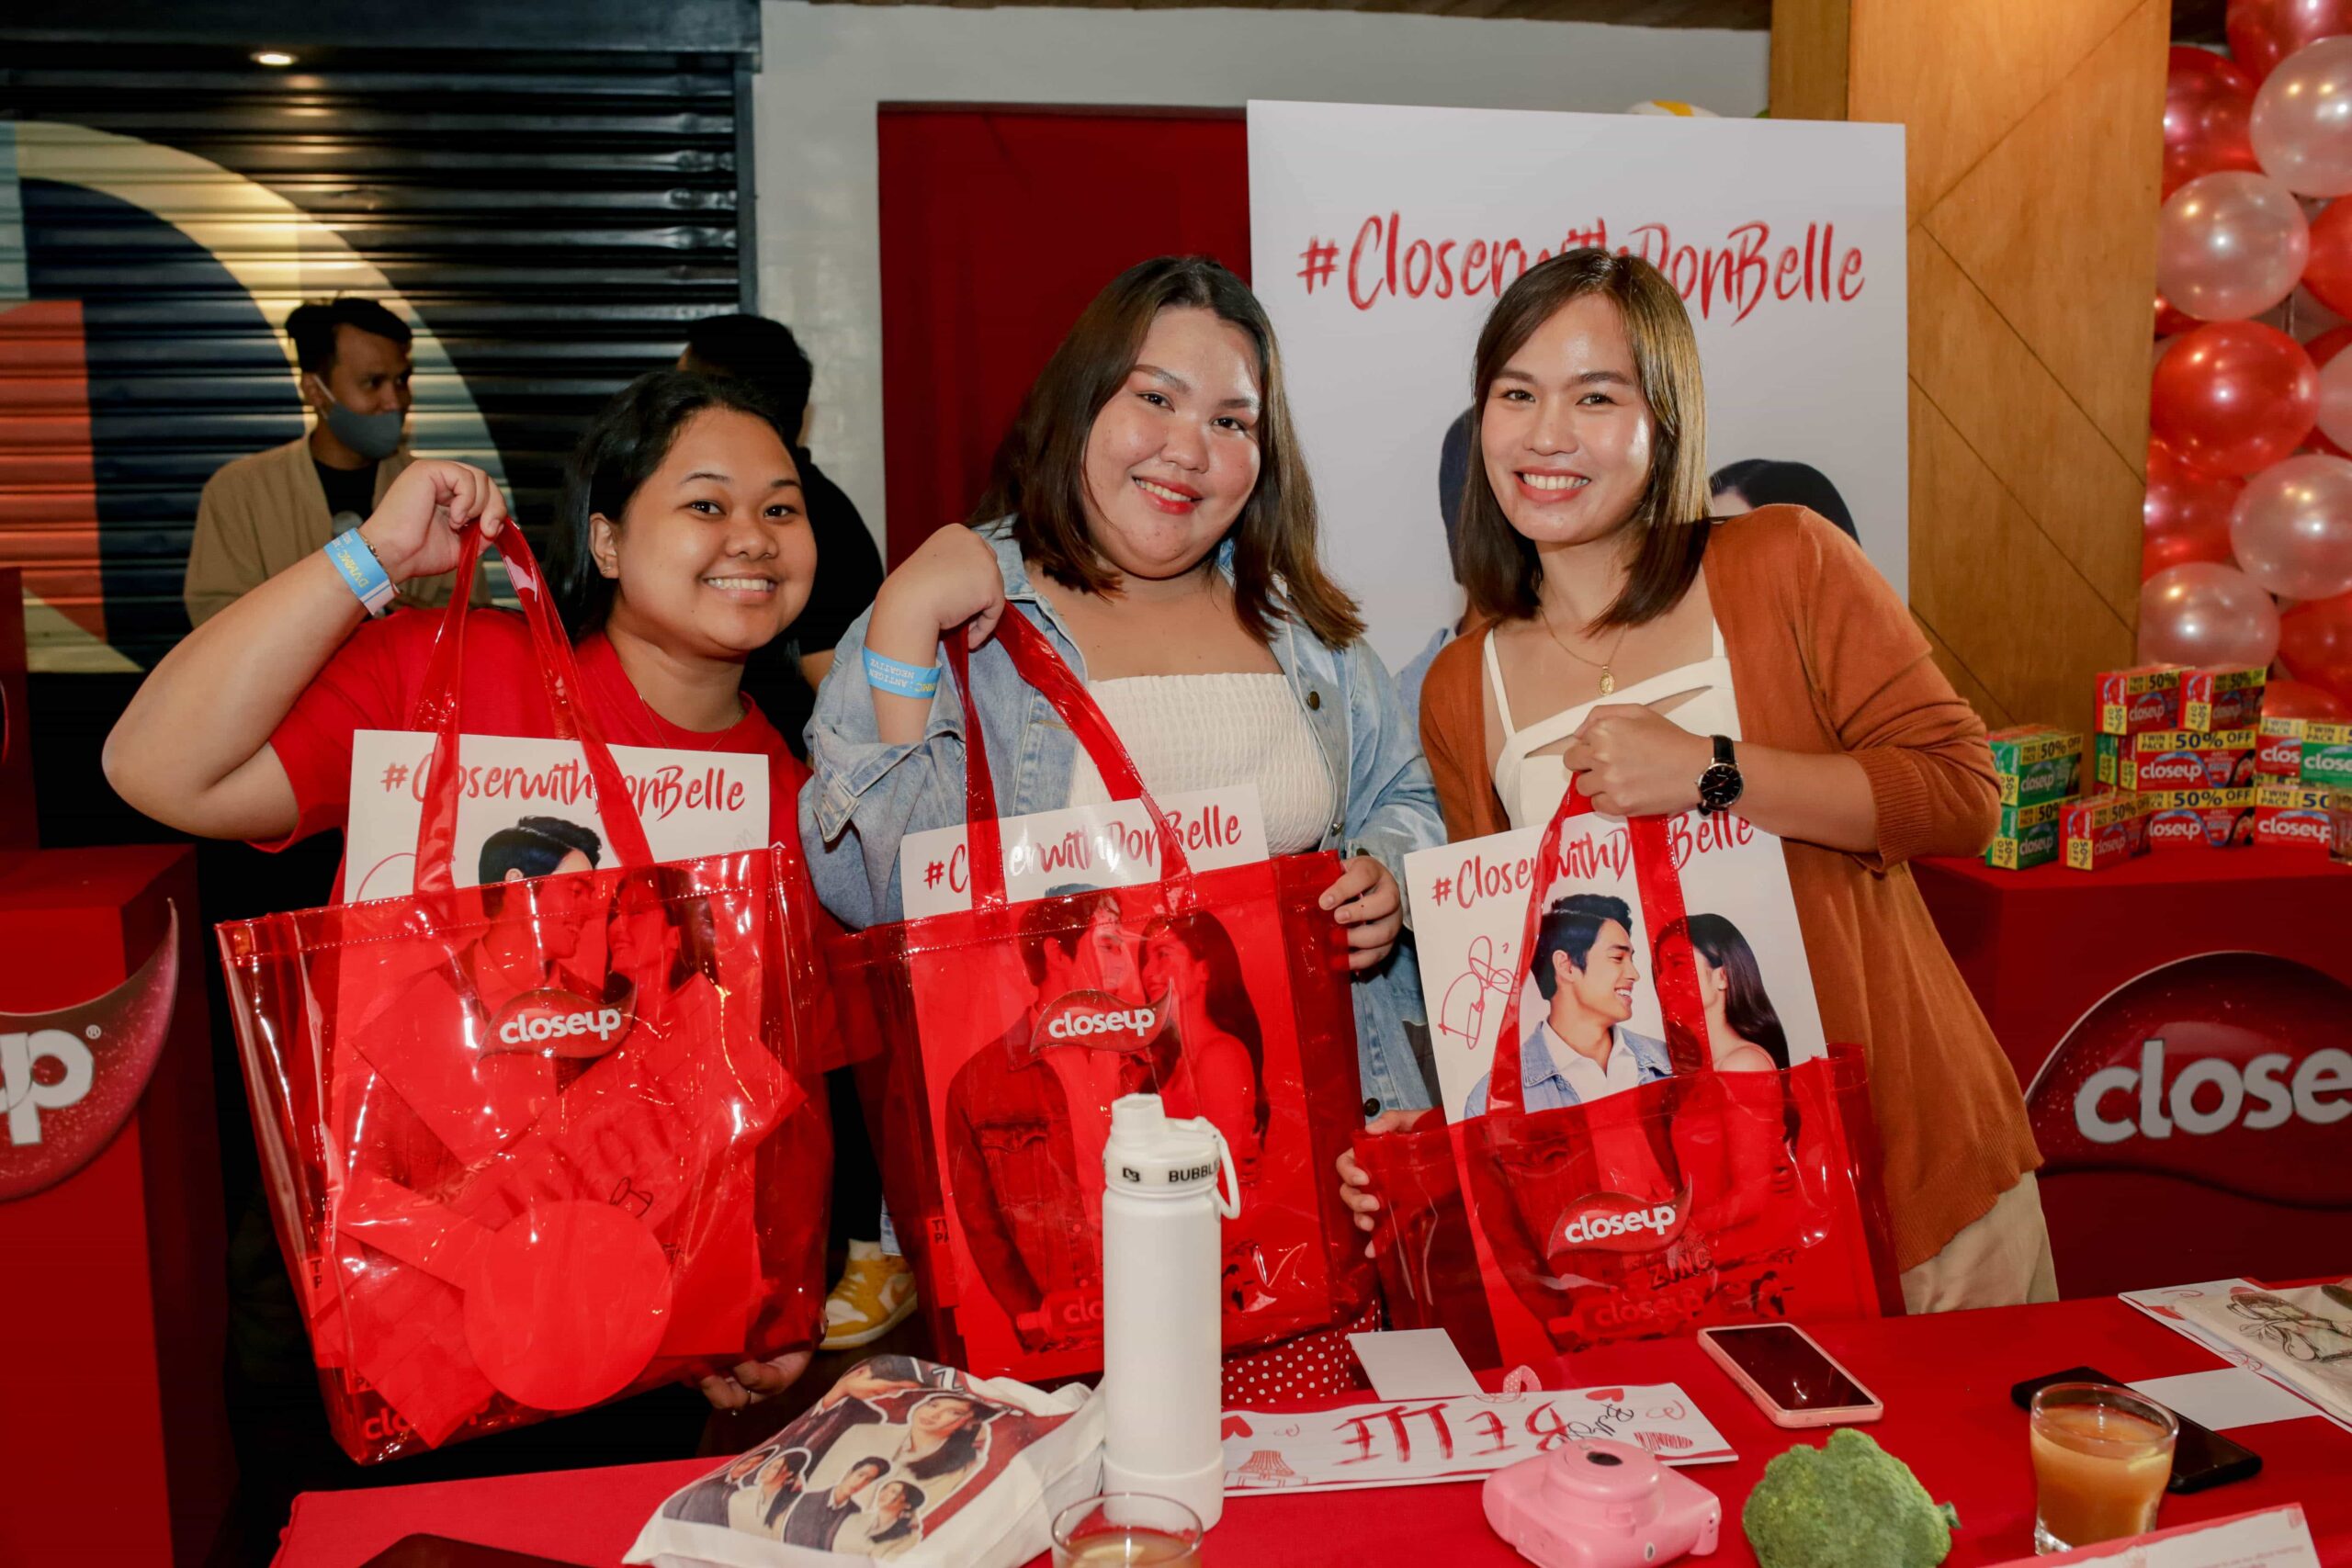 donbelle First Fan Meet in Manila